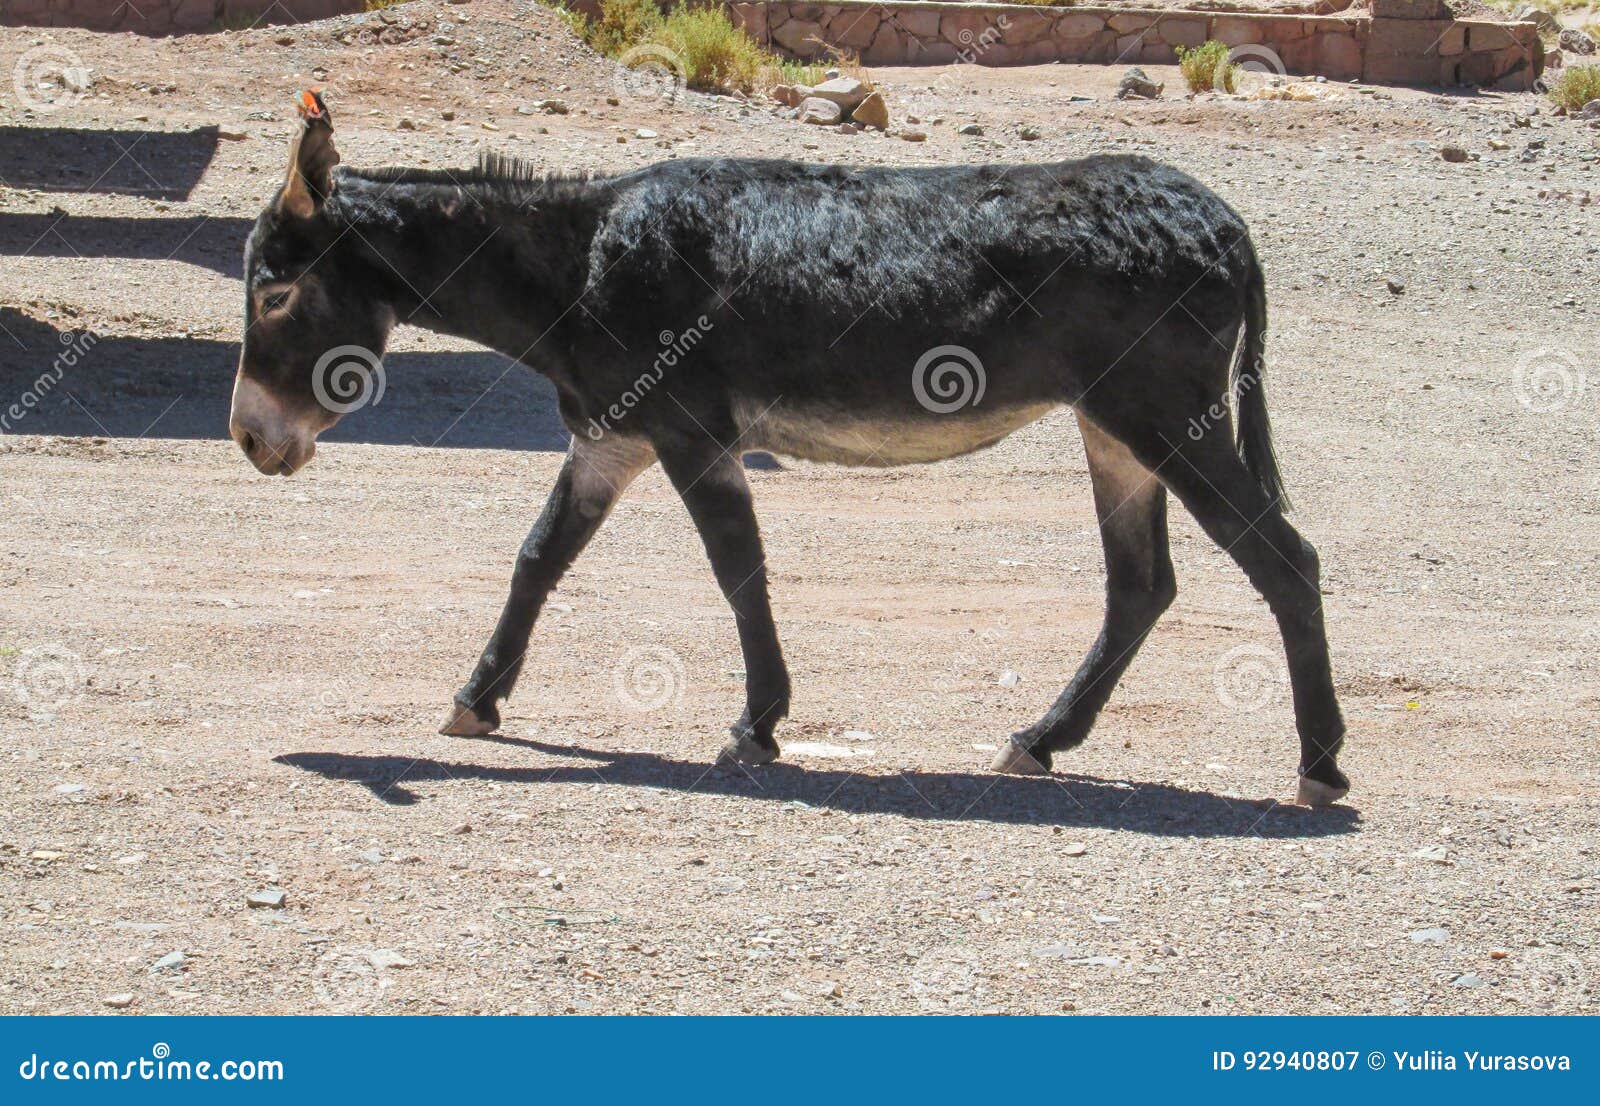 balck donkey